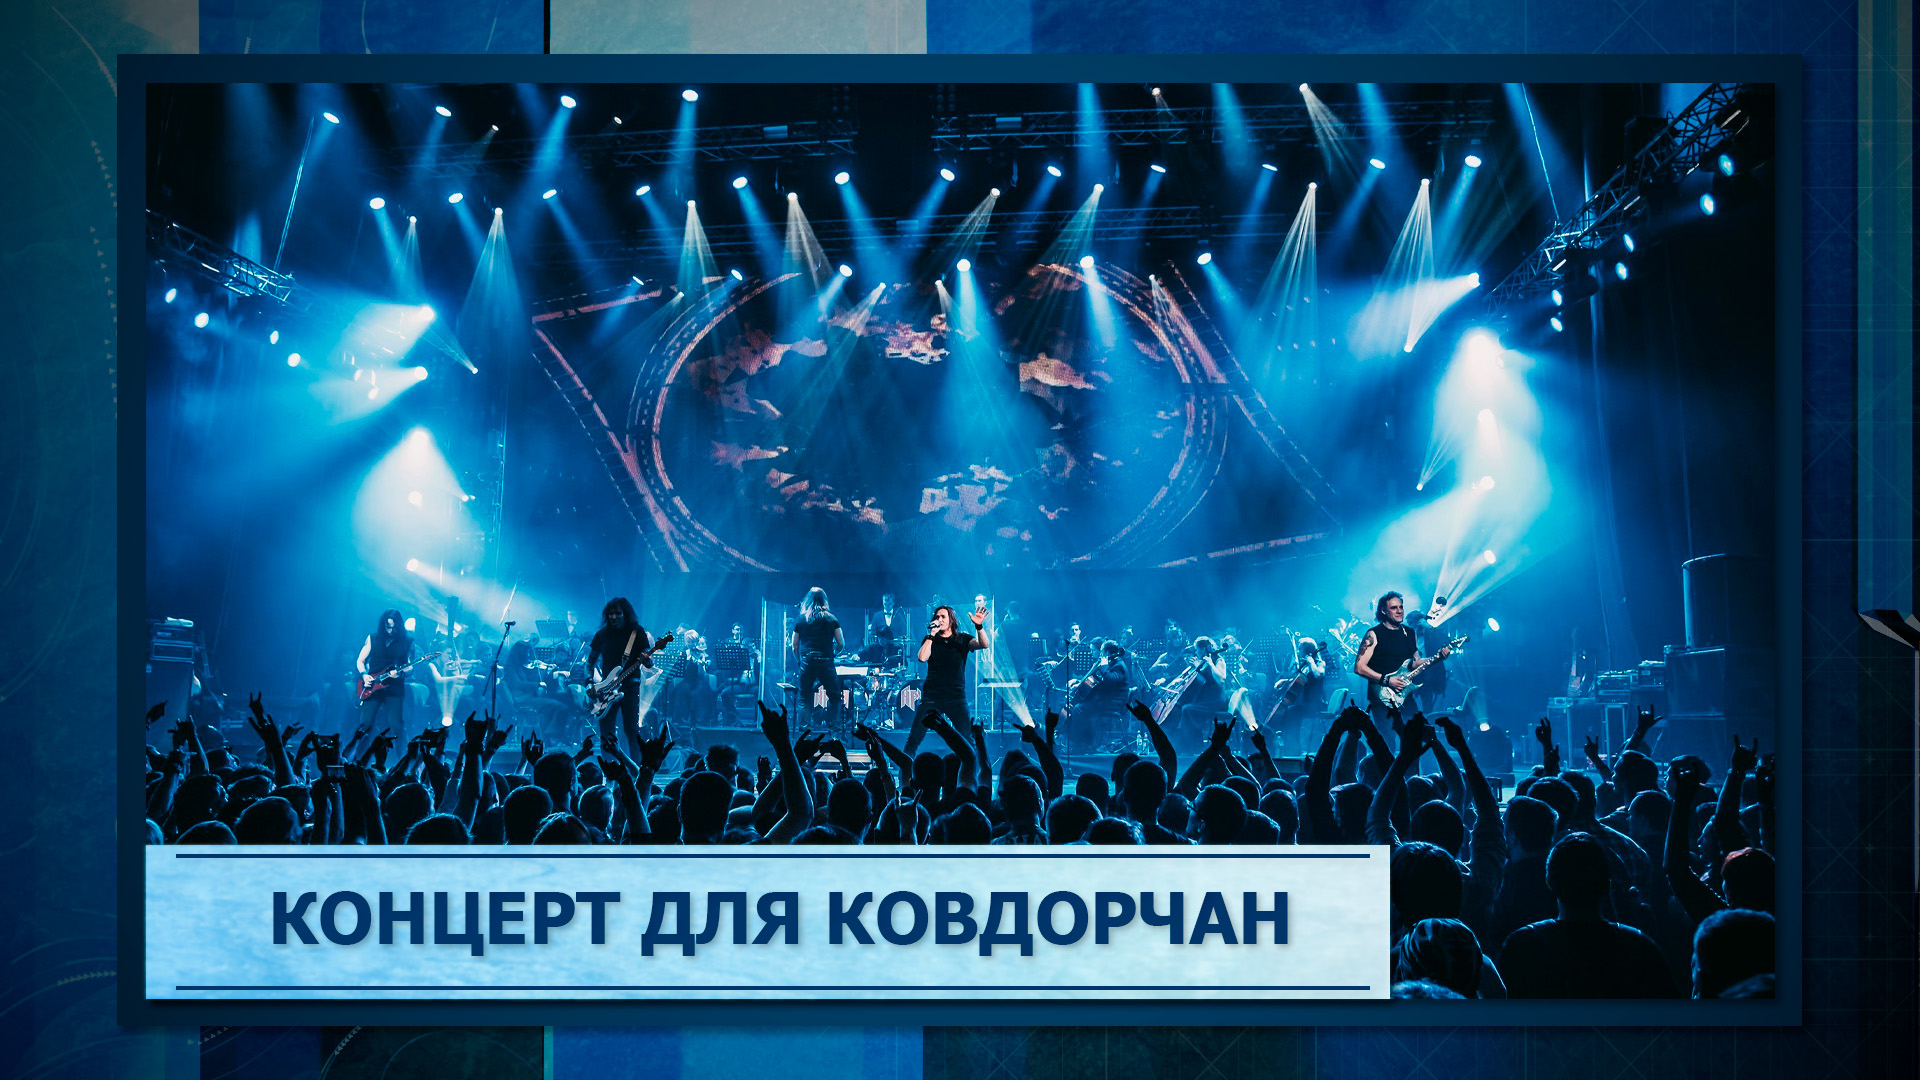 Концерт для ковдорчан